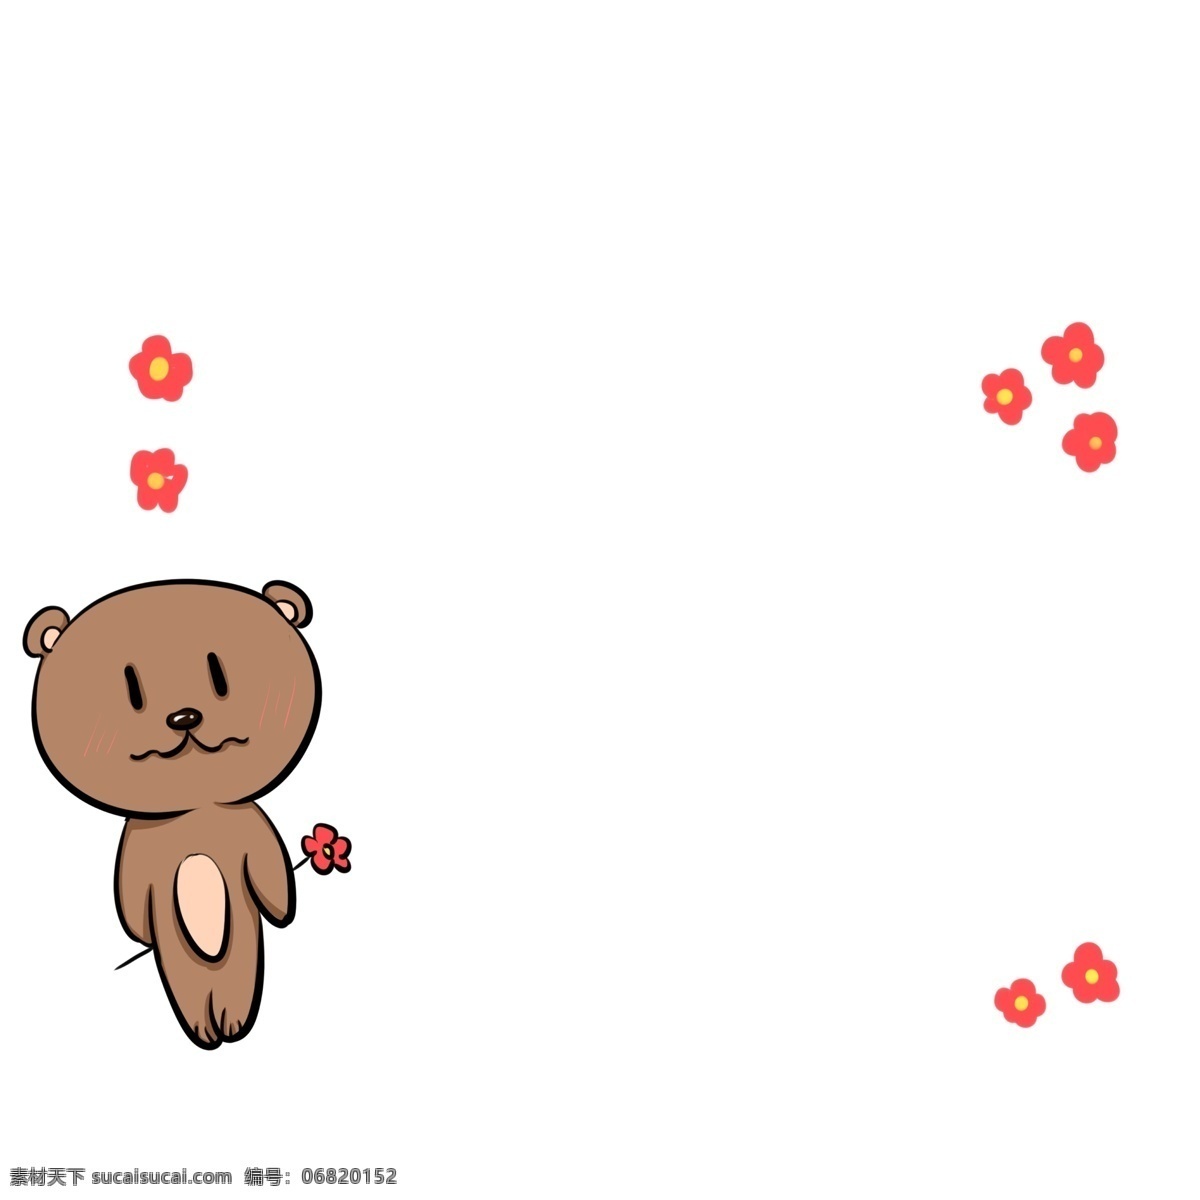 手绘 可爱 小 熊 边框 棕色的小熊 可爱的小熊 红色的花朵 漂亮的边框 卡通边框 手绘小熊边框